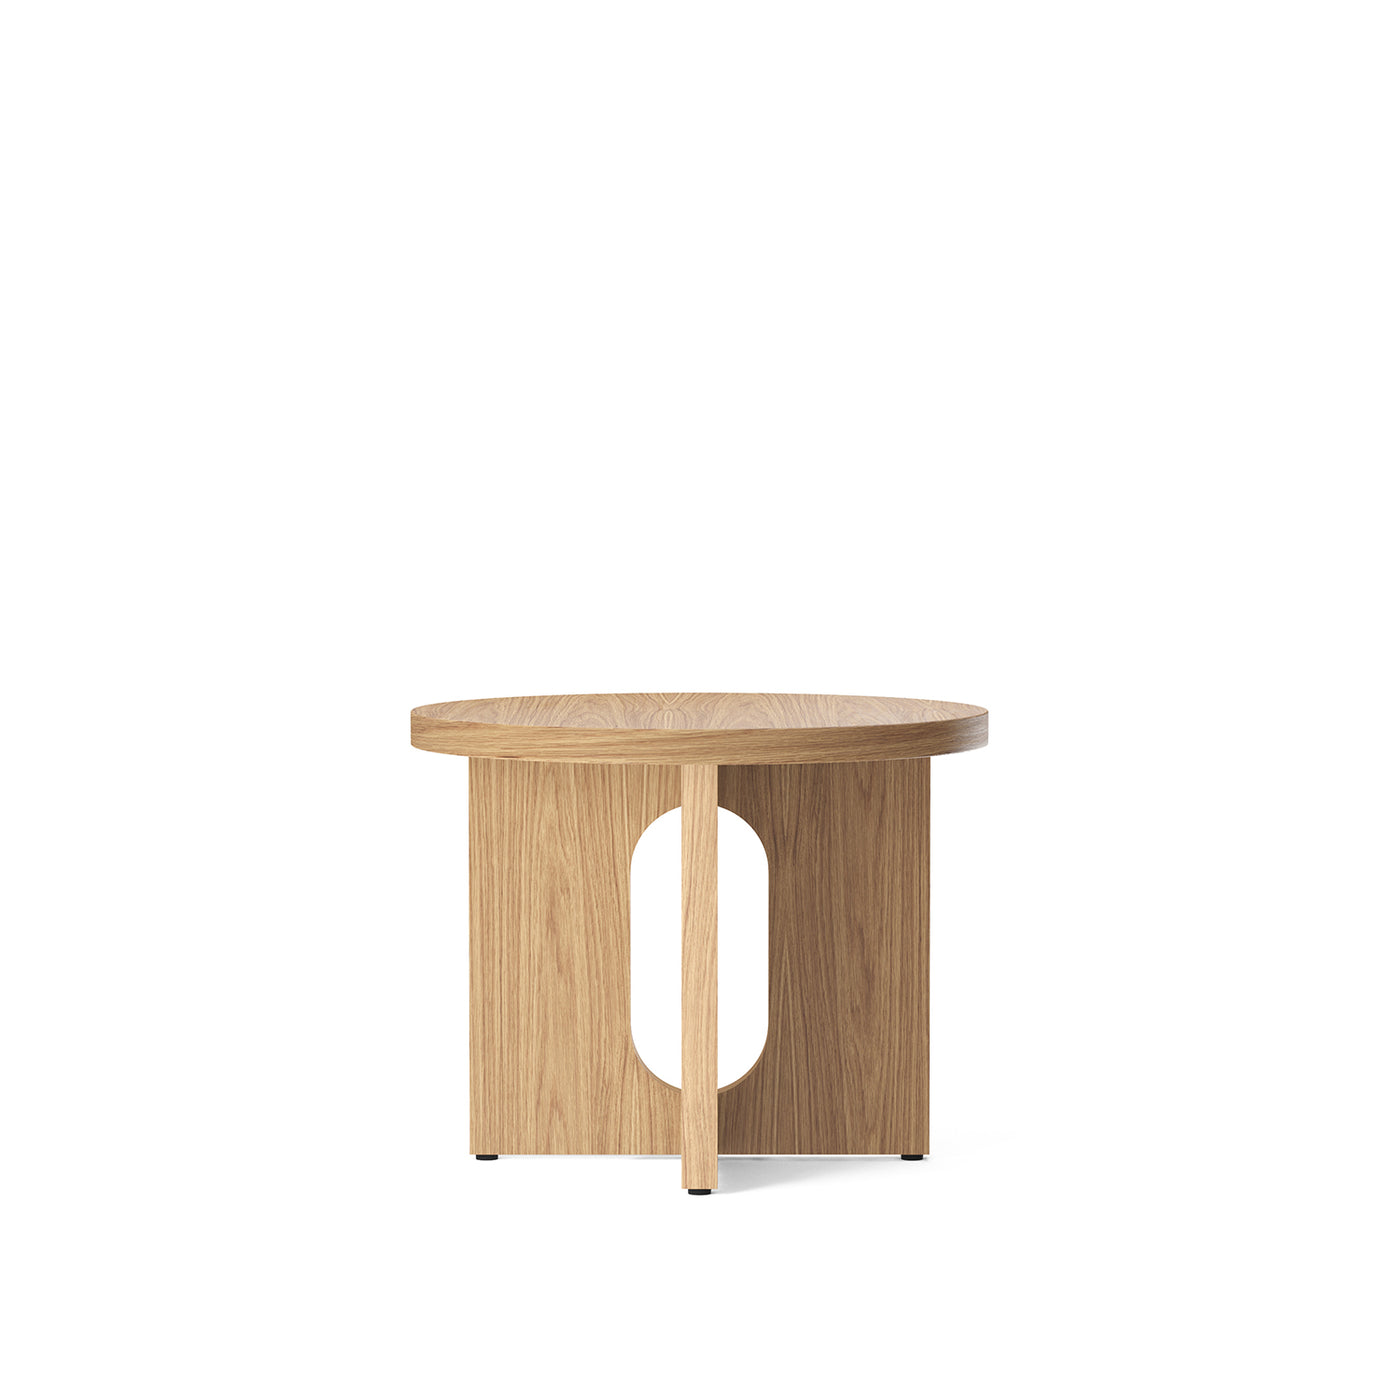 dřevěný noční stolek, dubový noční stůl, Menu space Androgyne, Menu cz, Romein concept store, luxusní nábytek, nábytek do ložnice